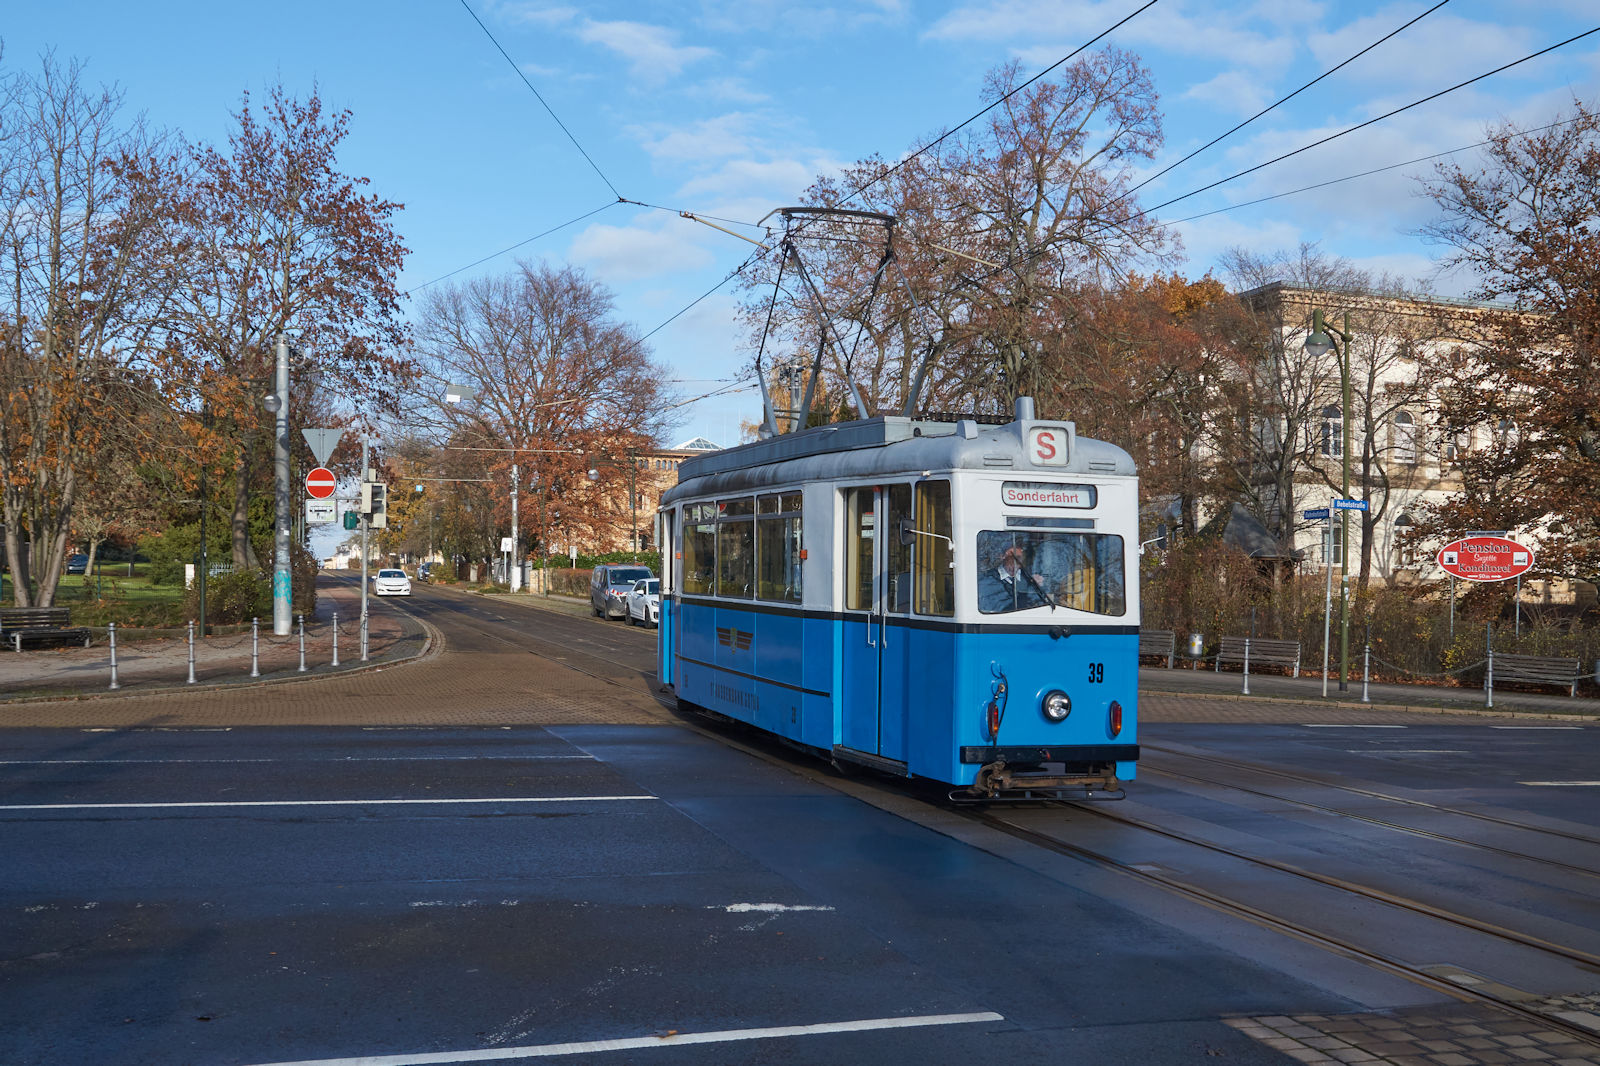 Am 26.11.2022 war ET55 Nr. 39 der Thringerwaldbahn und Straenbahn Gotha als Sonderfahrt unterwegs. Kurz vor dem Ziel am Bahnhof wird die Bebelstrae gekreuzt. Der ET55 stellt den bergang zwischen LOWA- und Gothawagen dar und weist daher noch groe hnlichkeit mit den LOWA-Wagen auf.
